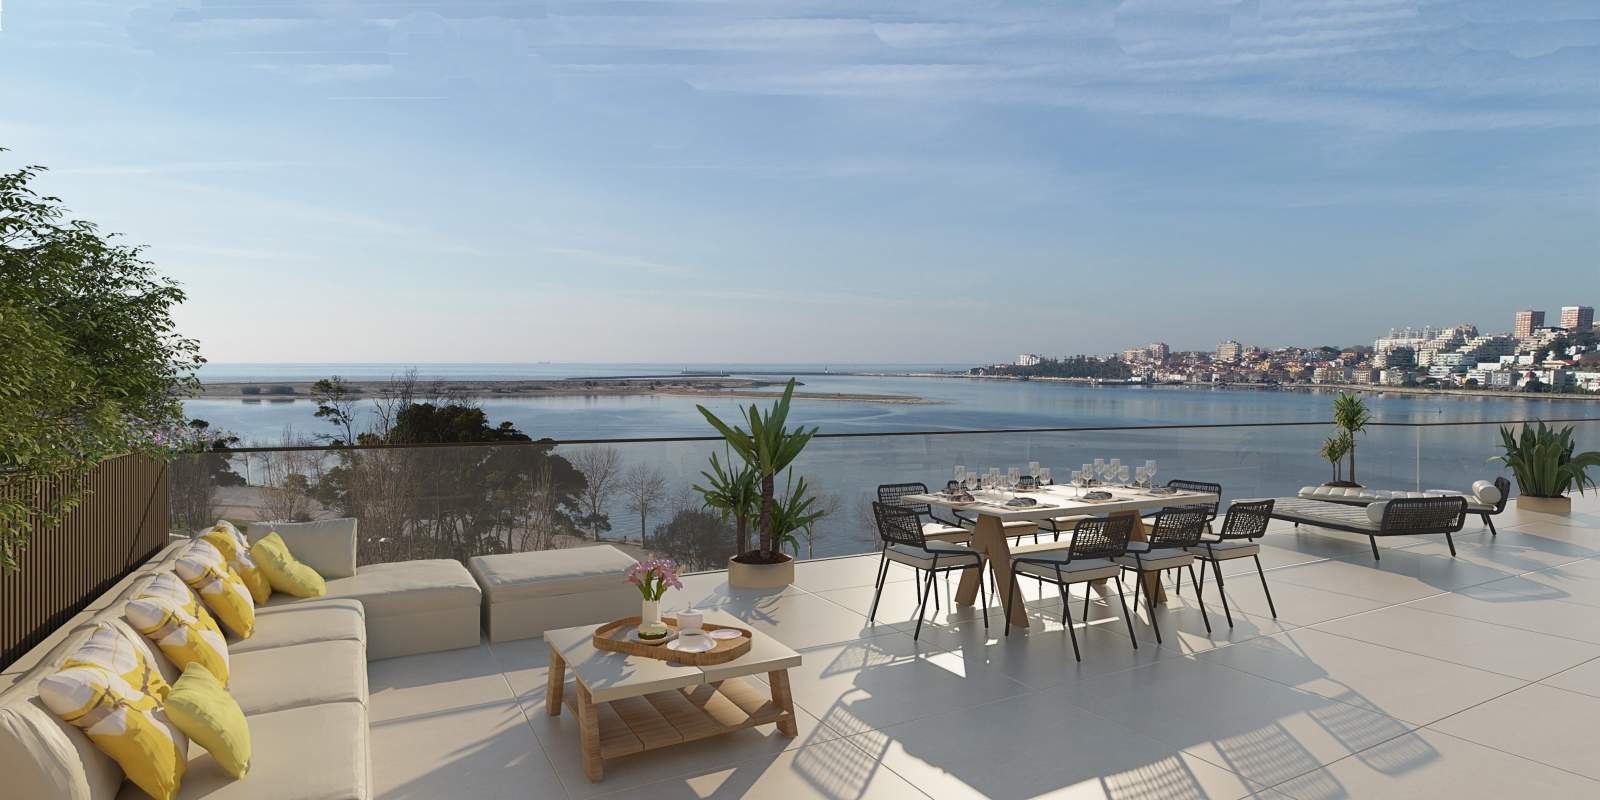 Piso en venta con terraza, en exclusivo condominio, V. N. Gaia, Porto, Portugal_175437